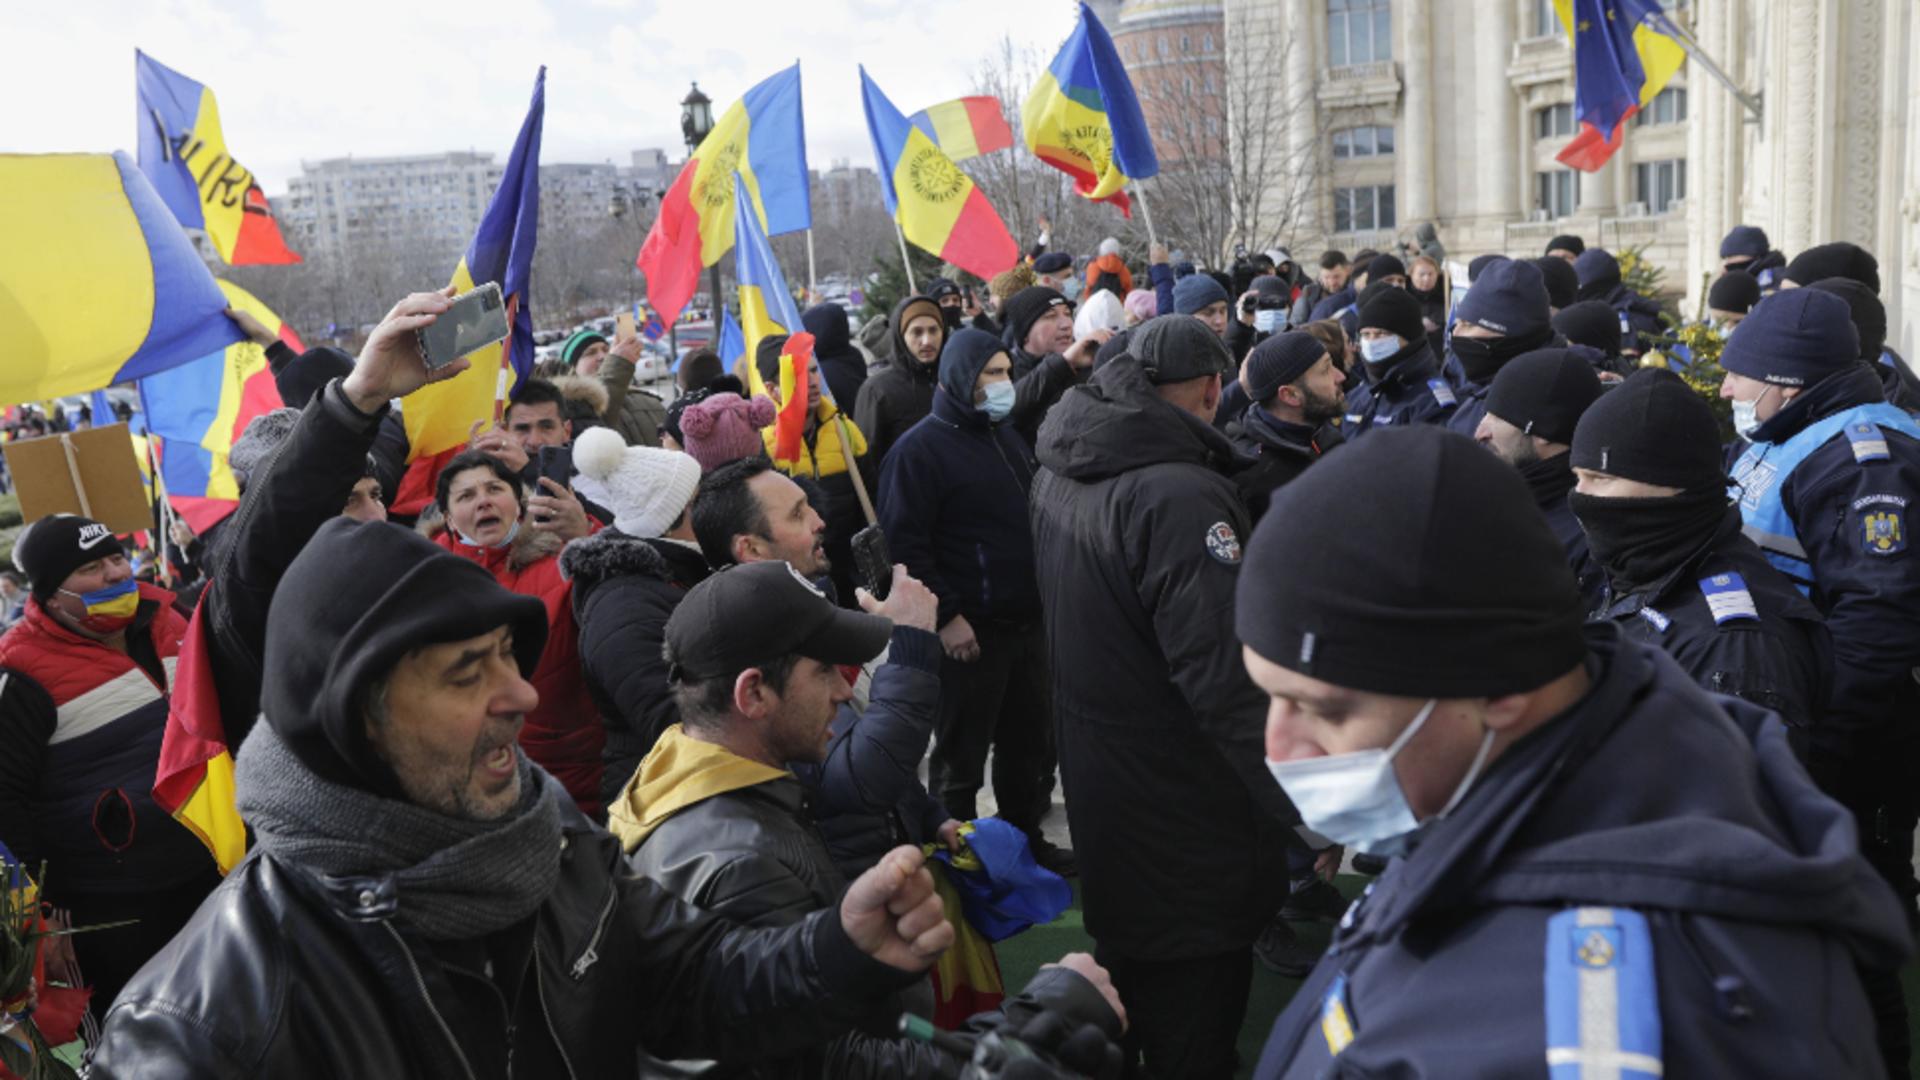 Több mint 170 ezer lejes büntetés a bukaresti tüntetőknek